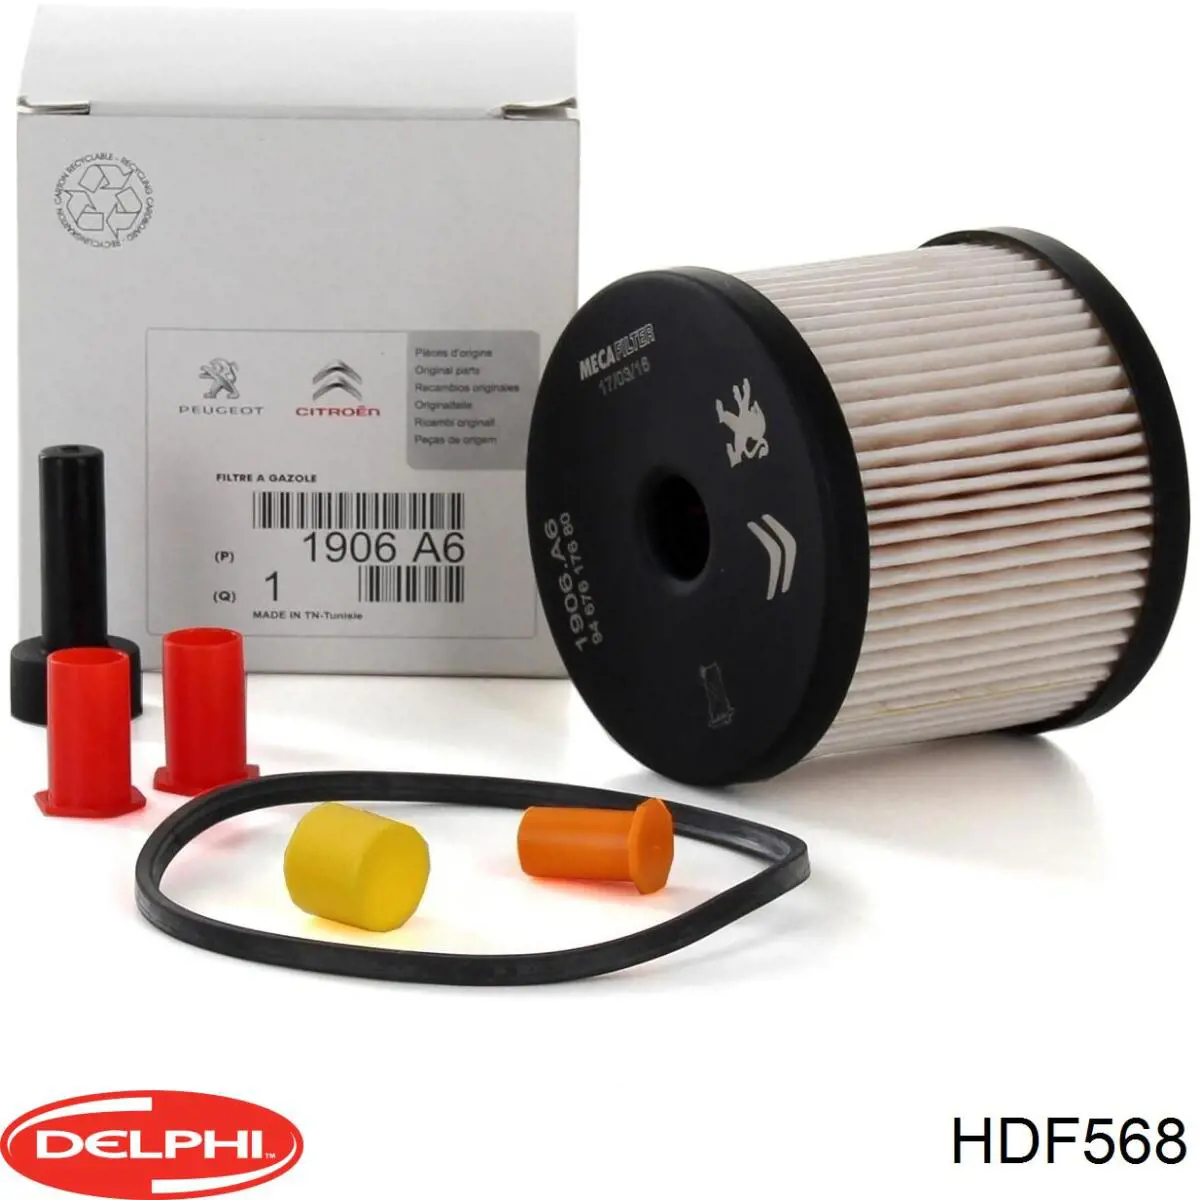 HDF568 Delphi filtro combustible